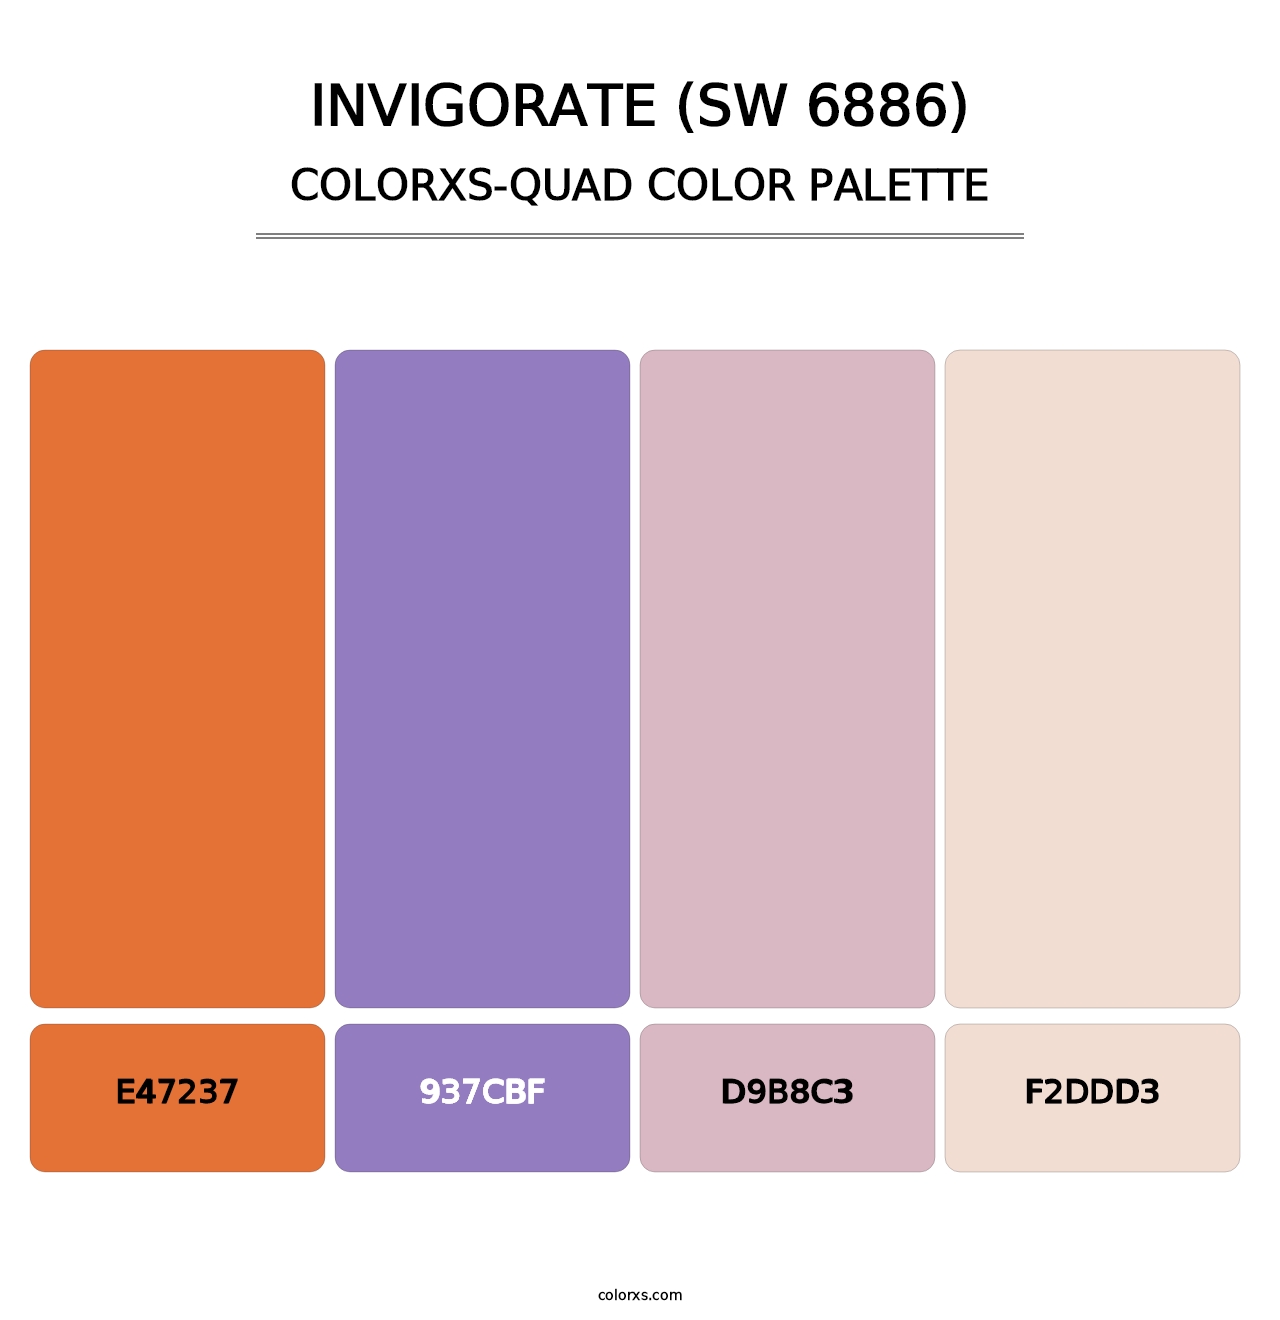 Invigorate (SW 6886) - Colorxs Quad Palette